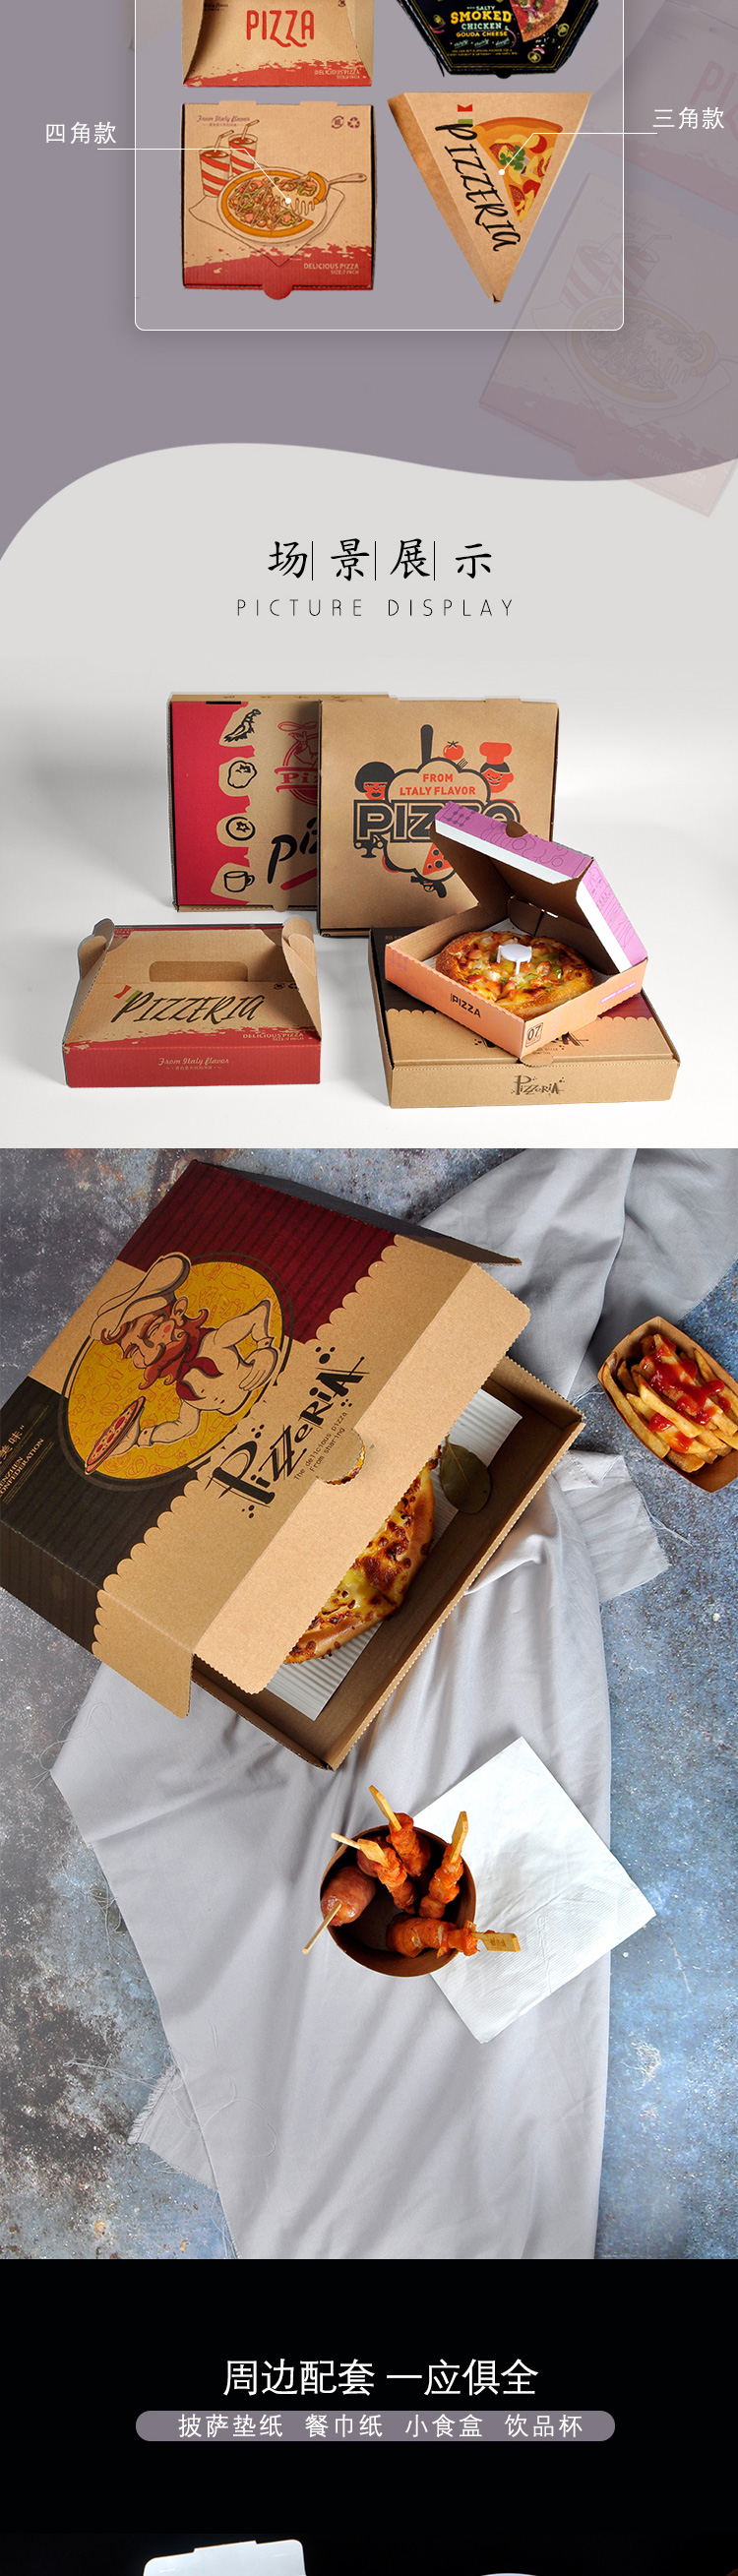 披萨盒详情页（牛皮纸版）_04.jpg